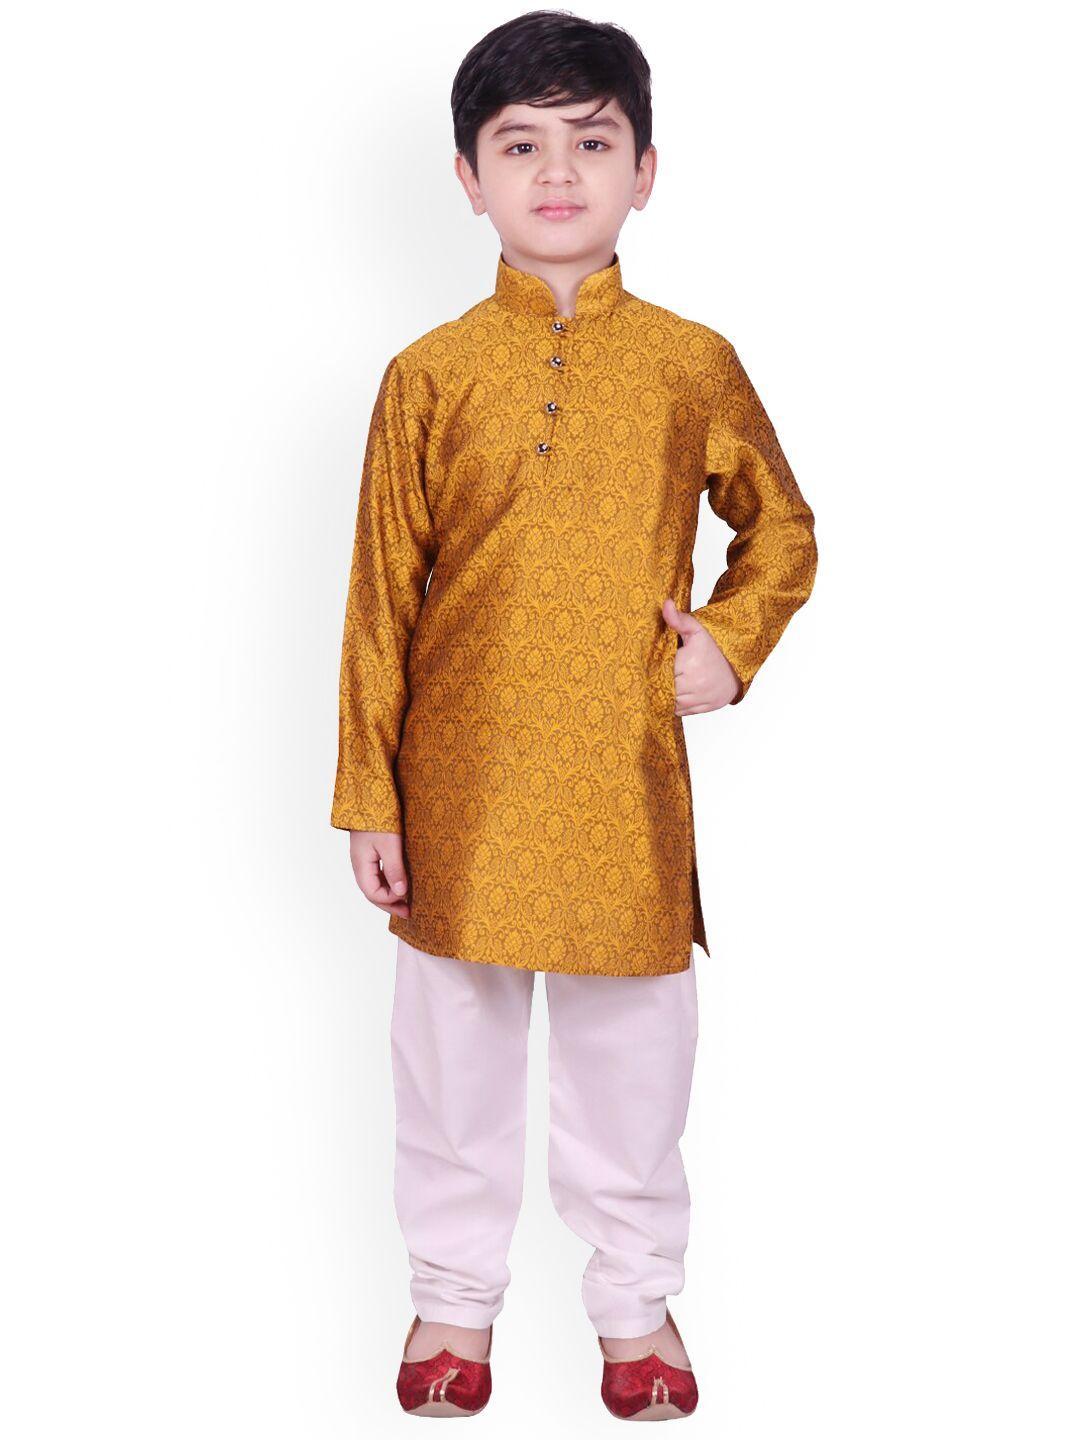 sg-yuvraj-boys-mustard-yellow-ethnic-motifs-printed-kurta-set